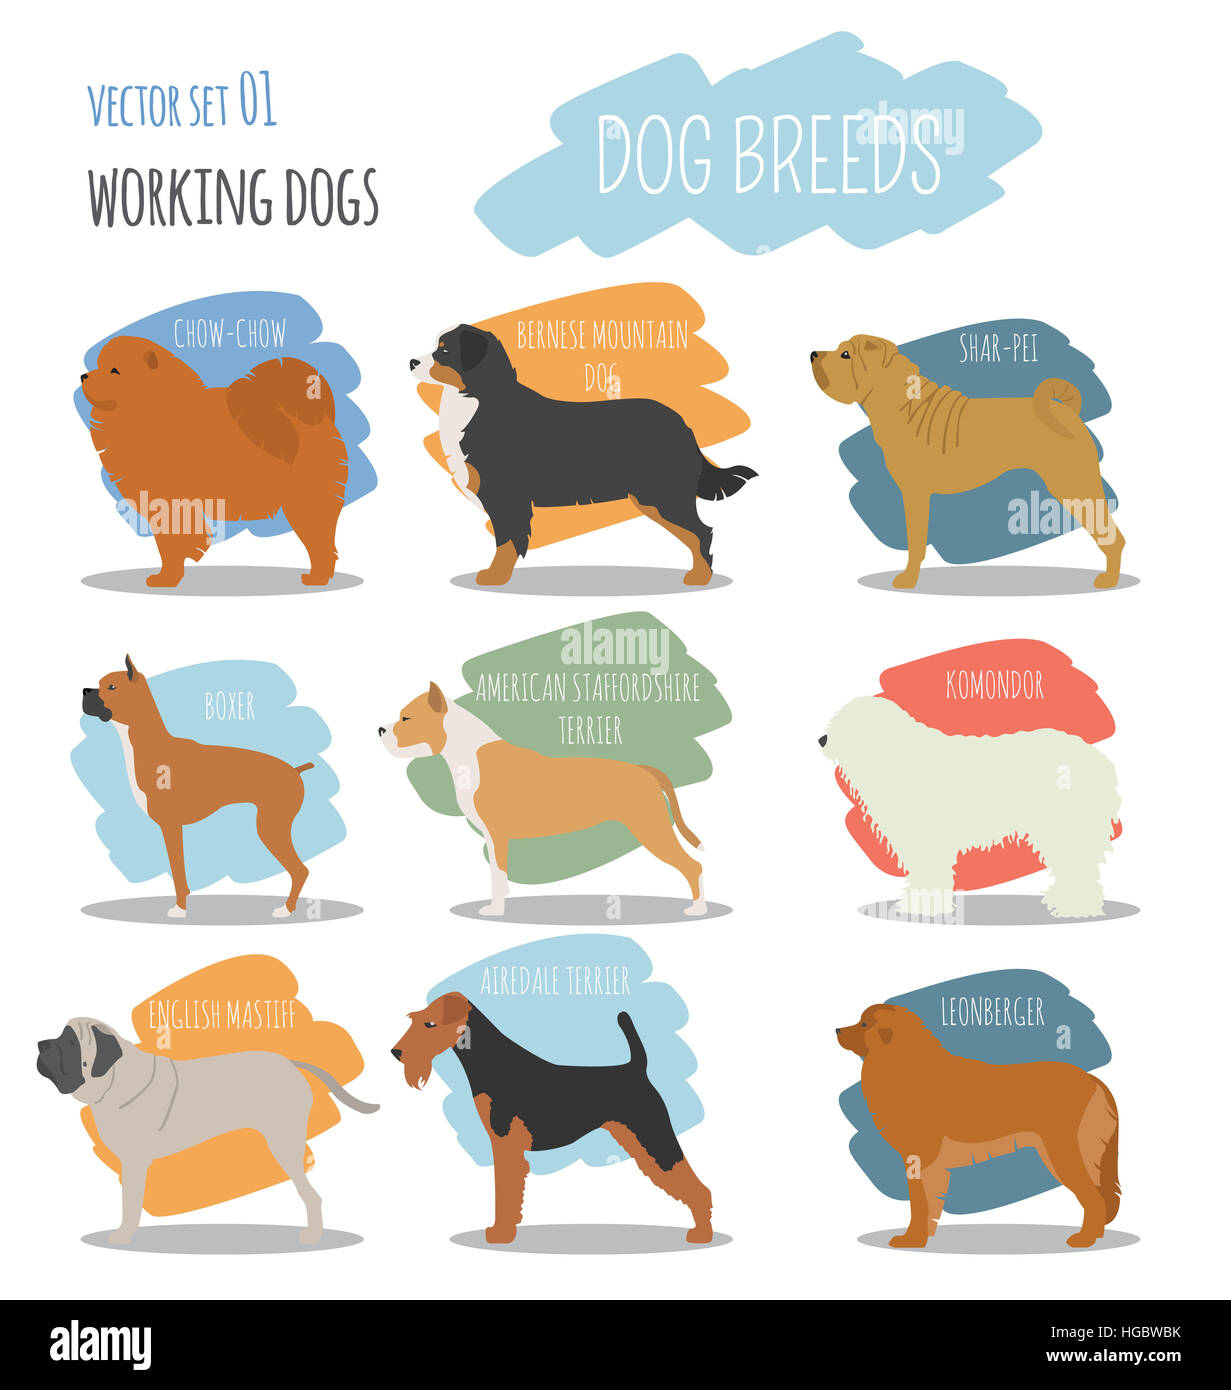 Dog breeds. Working (watching) dog set icon. Flat style. Vector illustration Stock Photo